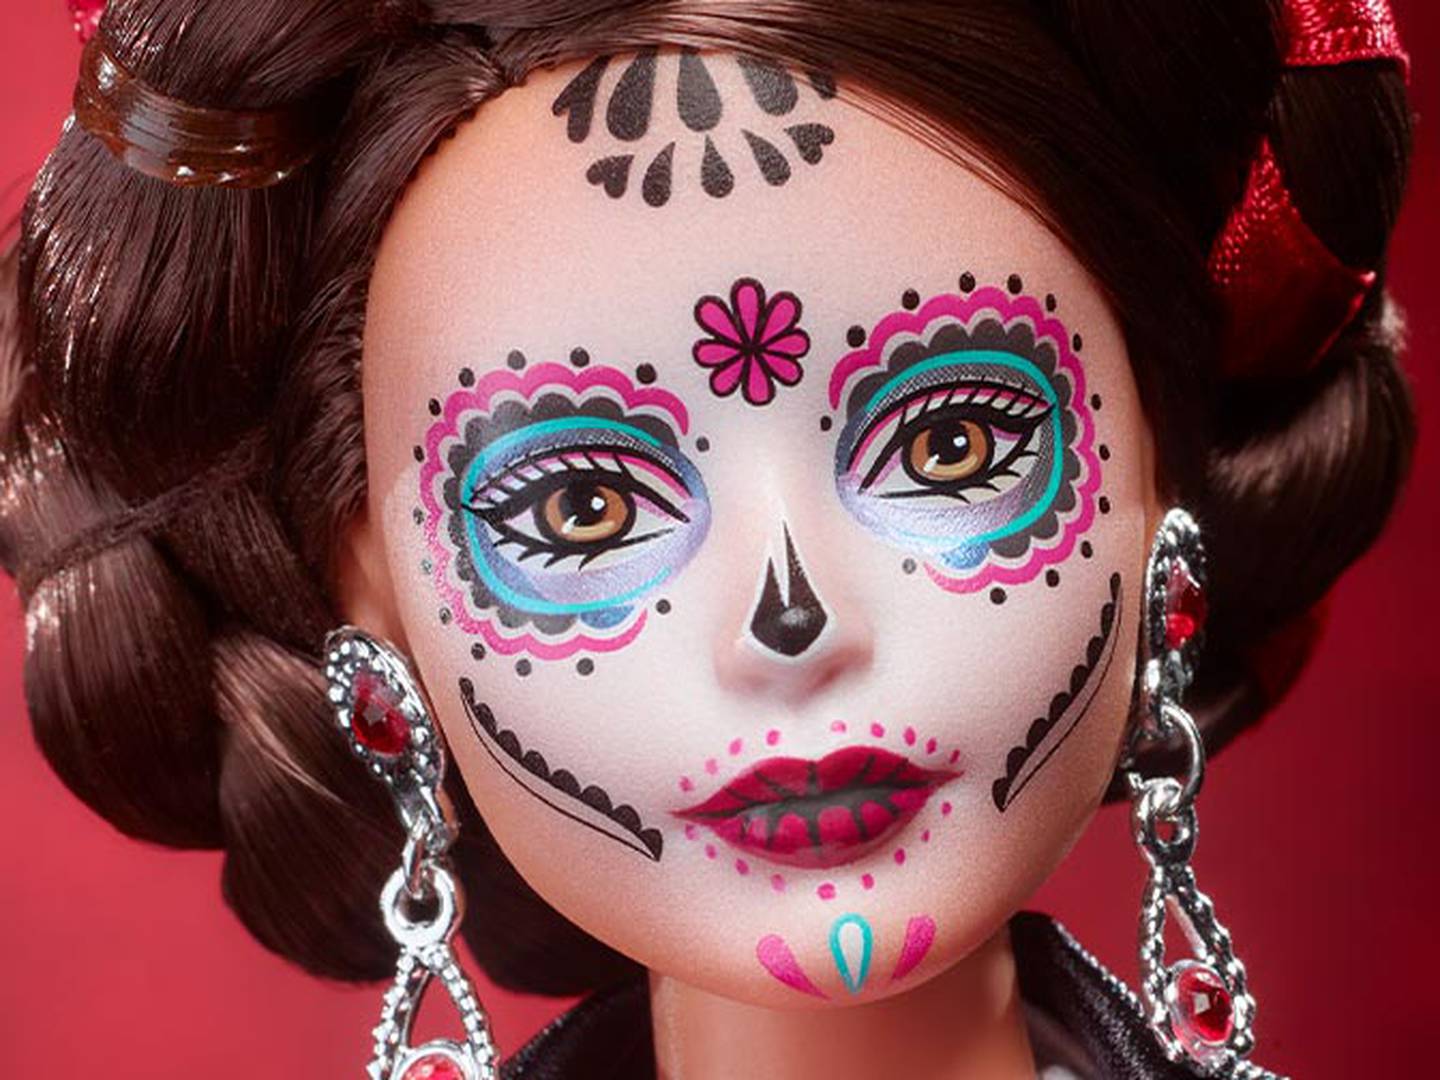 Barbie mexicana: conoce los detalles y precio que la hacen única